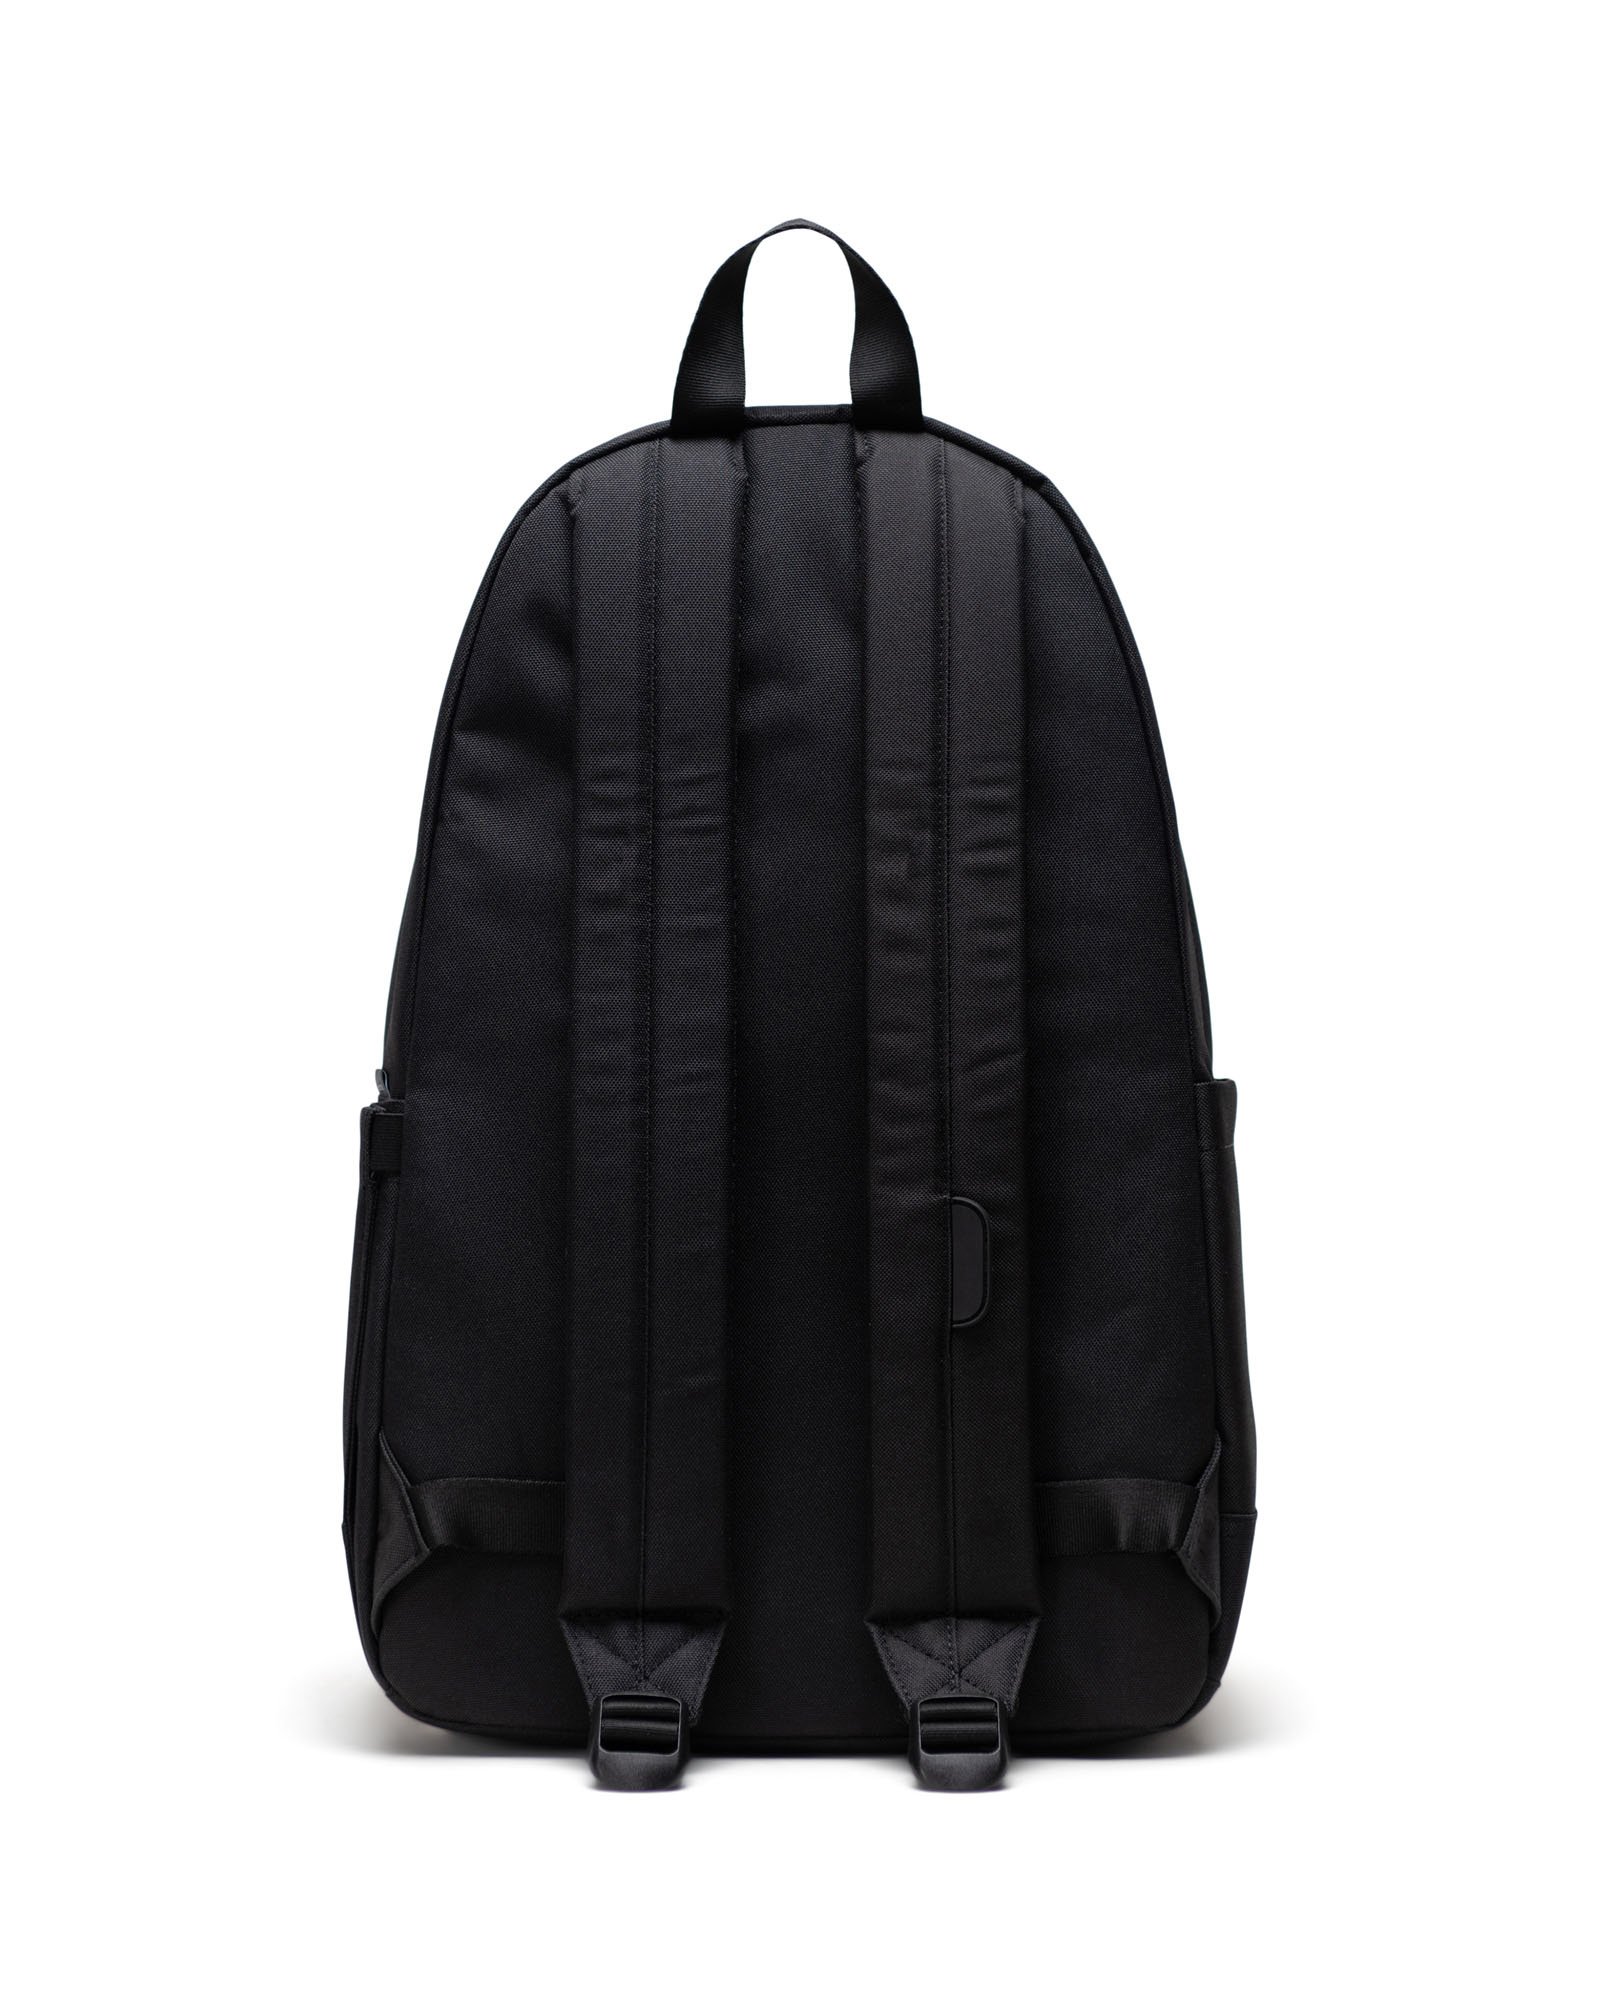 Herschel Heritage™ Backpack